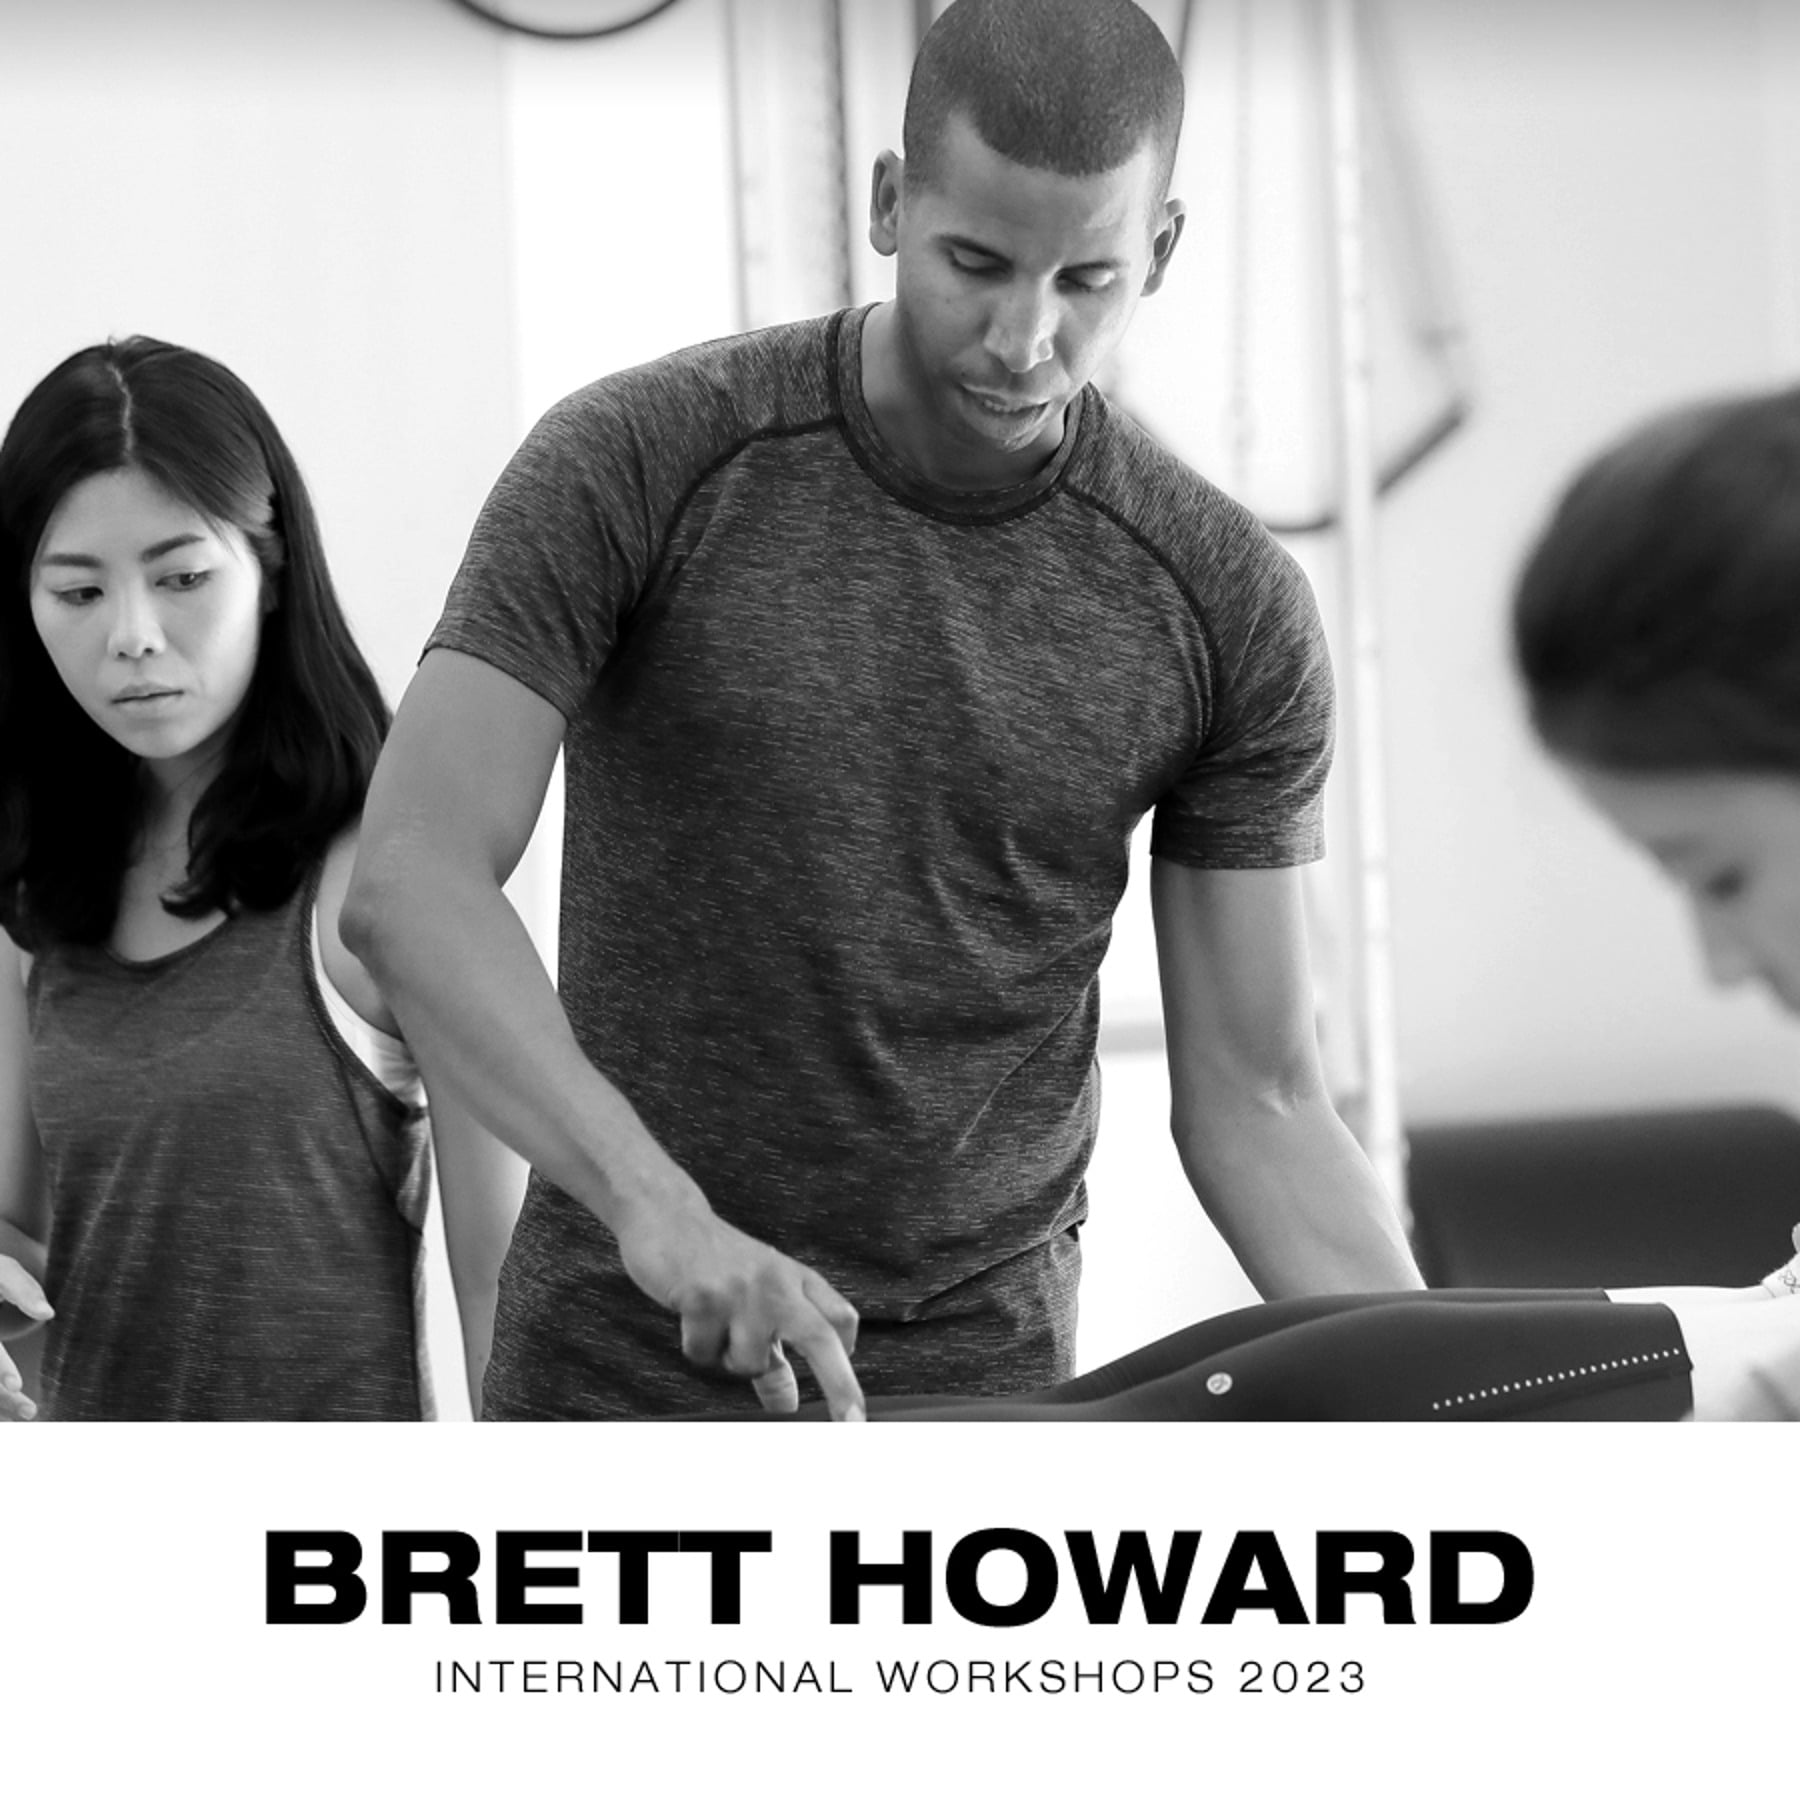 Classical Pilates workshops 2023 by Brett Howard